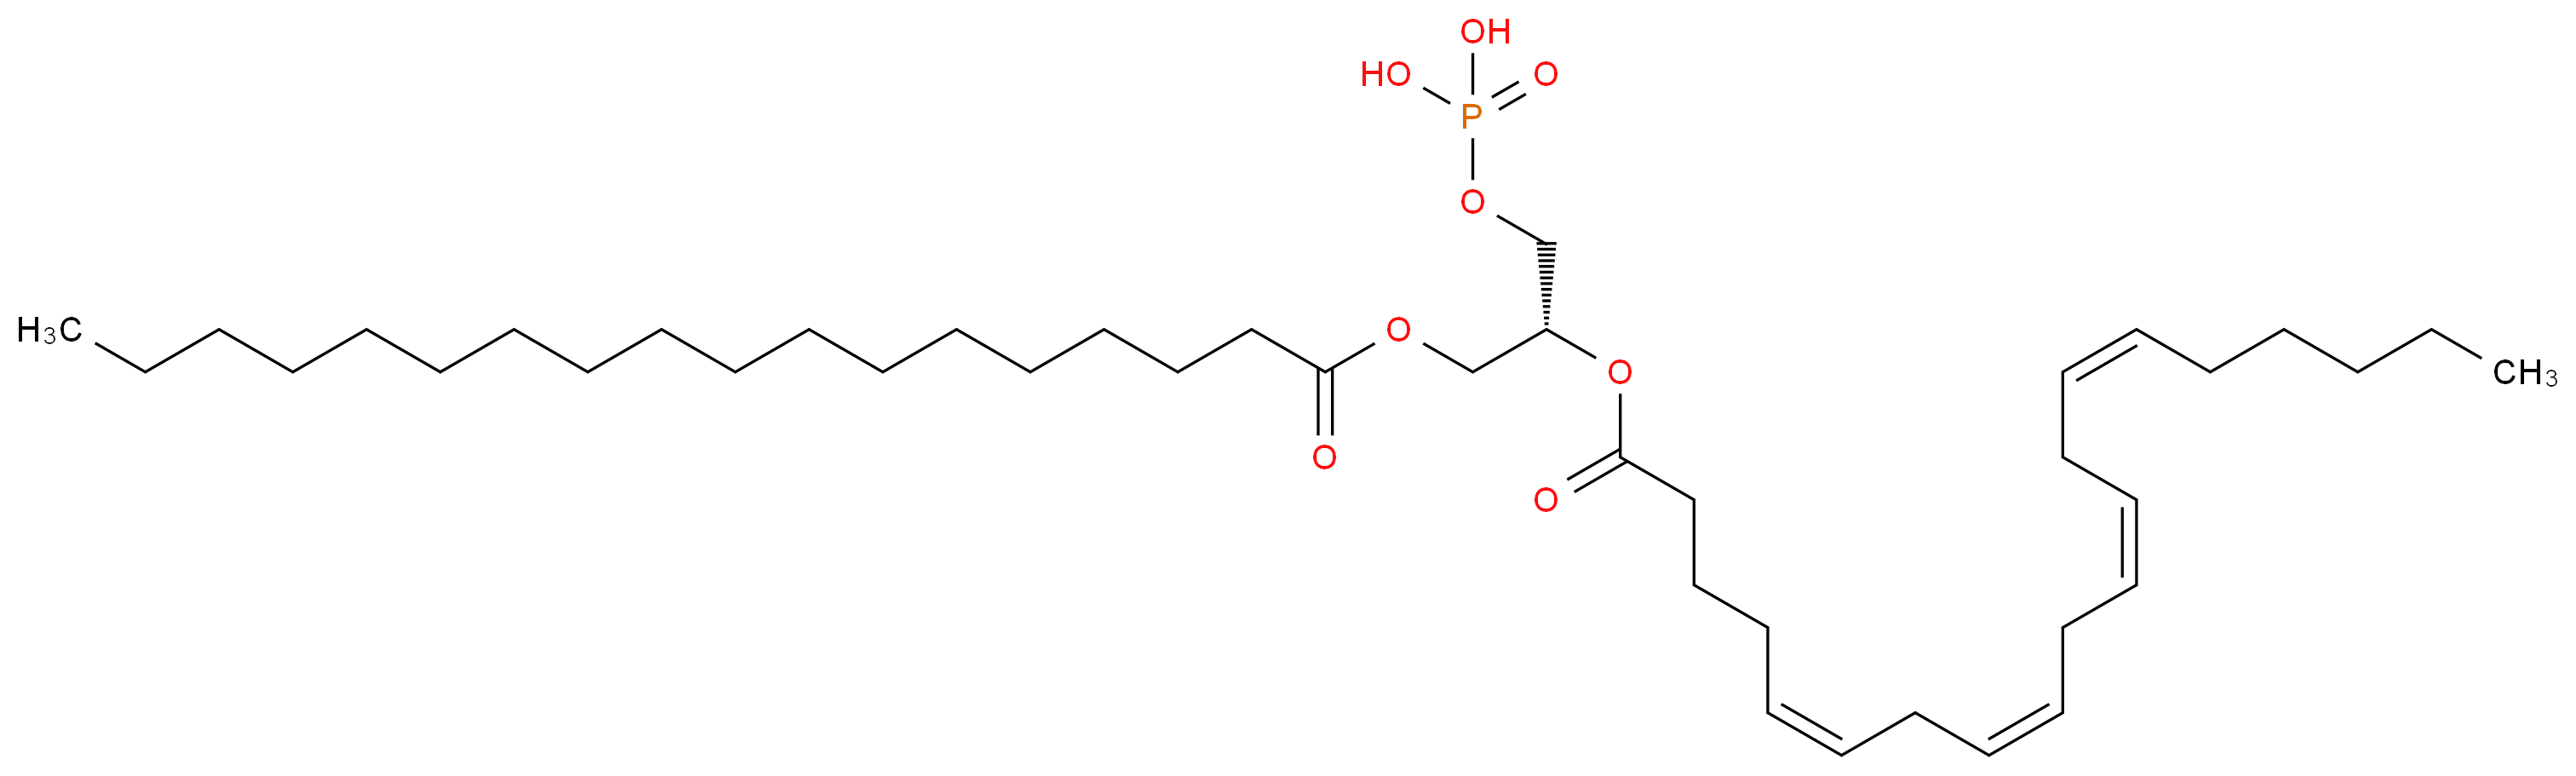 2-Arachidonoyl-1-stearoyl-sn-glycerol 3-phosphate_Molecular_structure_CAS_64665-00-5)